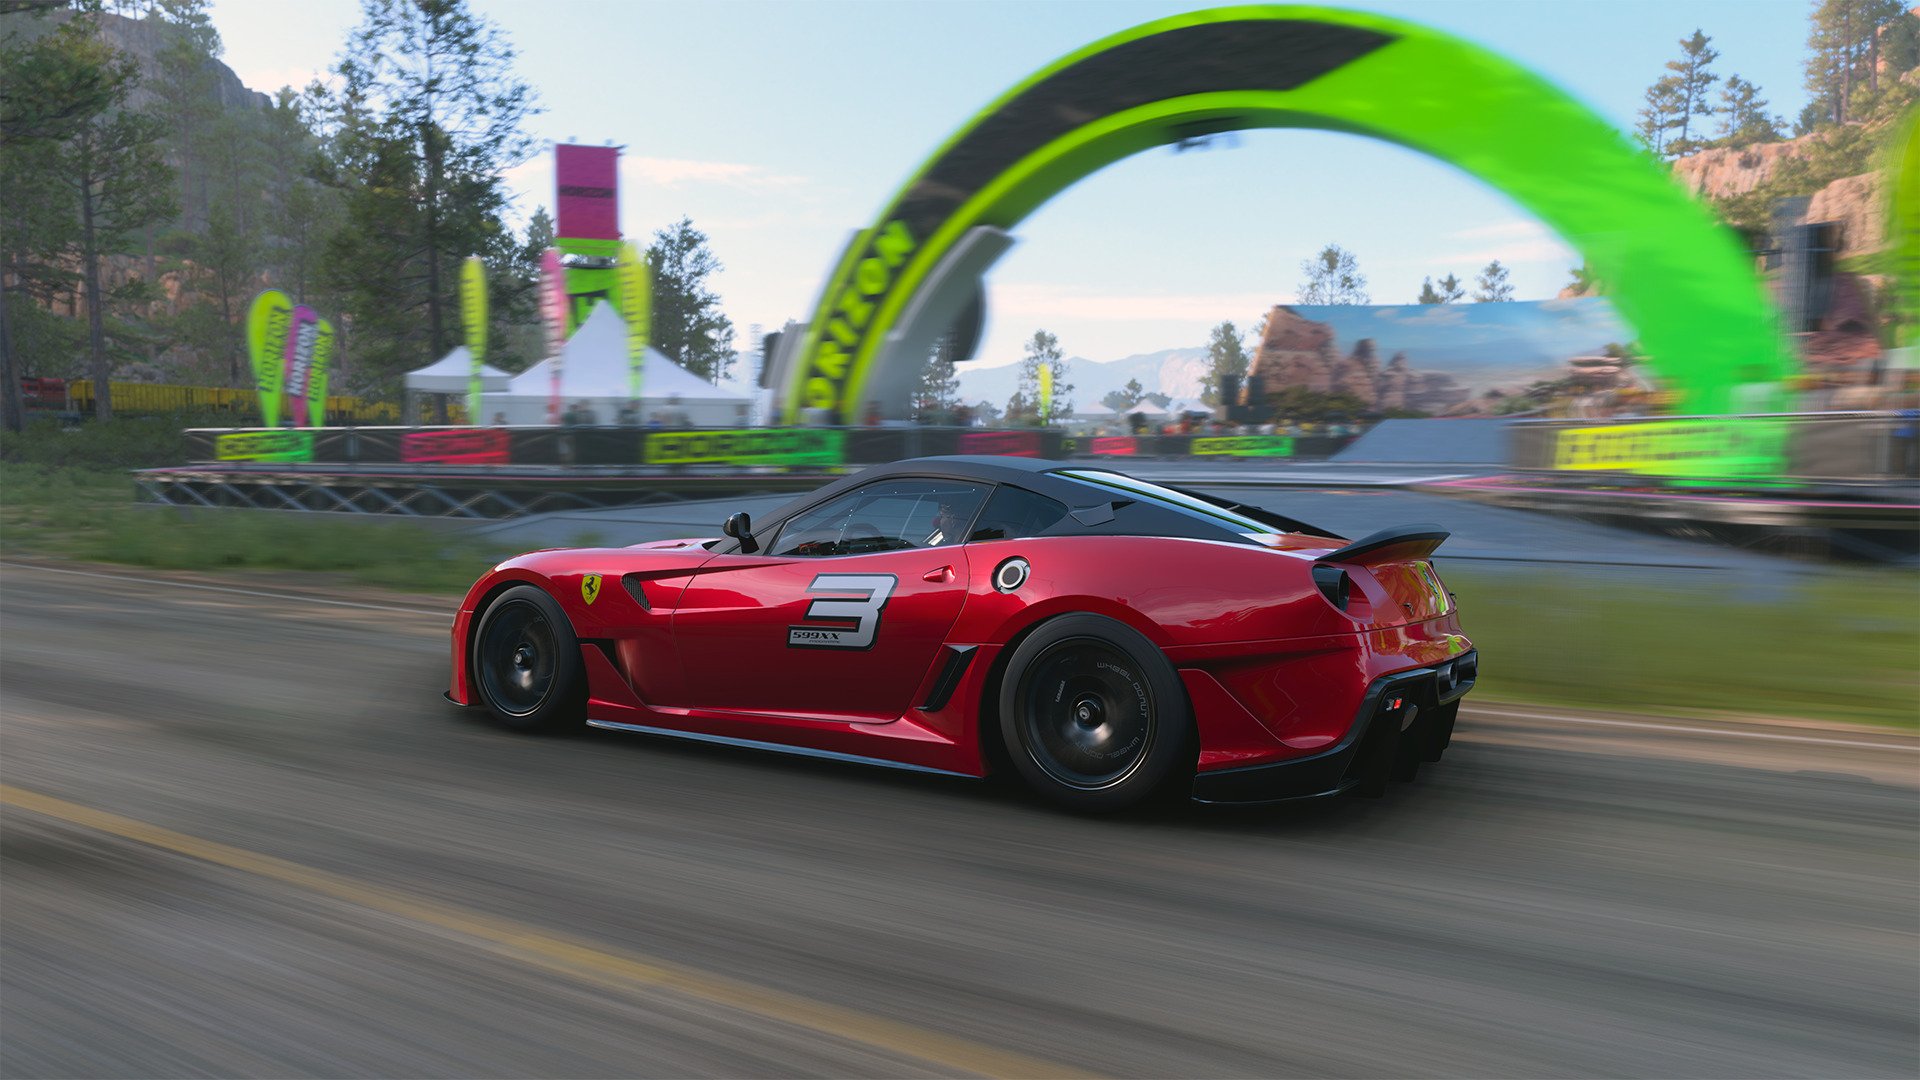 Forza Motorsport 7 is dead, long live Forza Motorsport - CNET